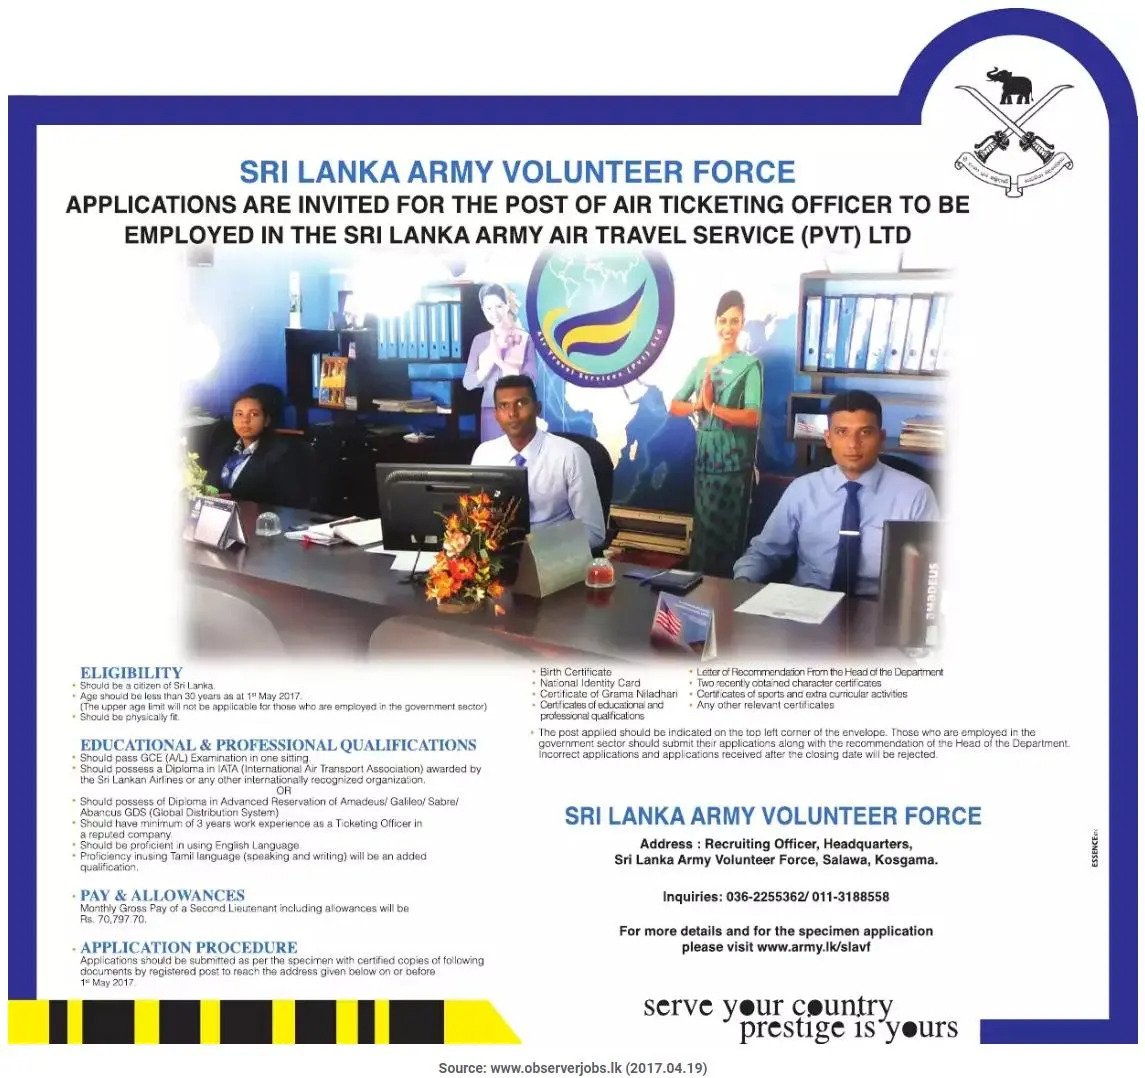 Air Ticketing Officer Vacancies in Sri Lanka Army Volunteer Force